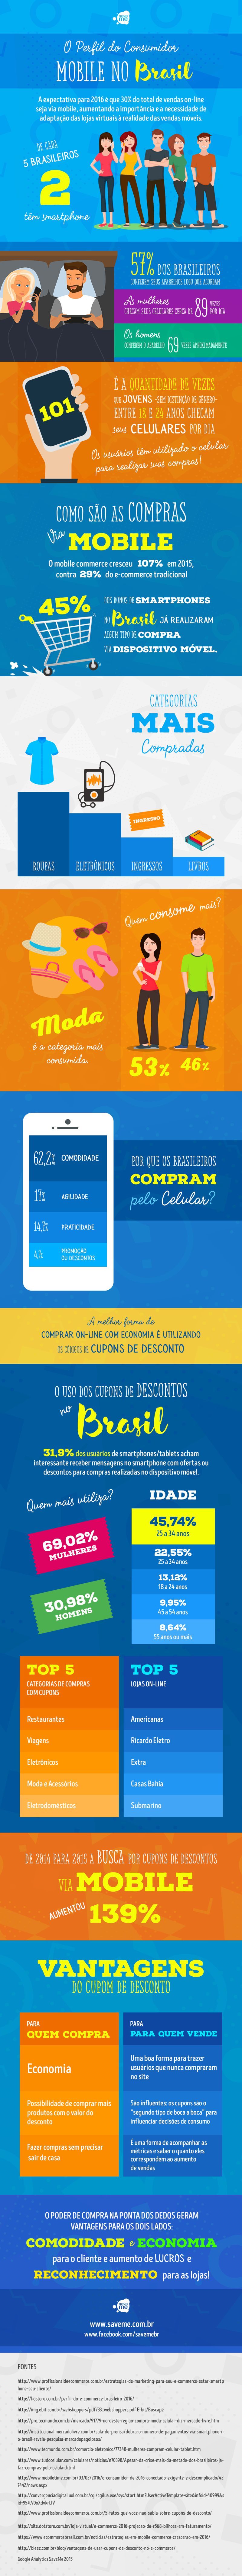 Perfil do Consumidor Mobile no Brasil